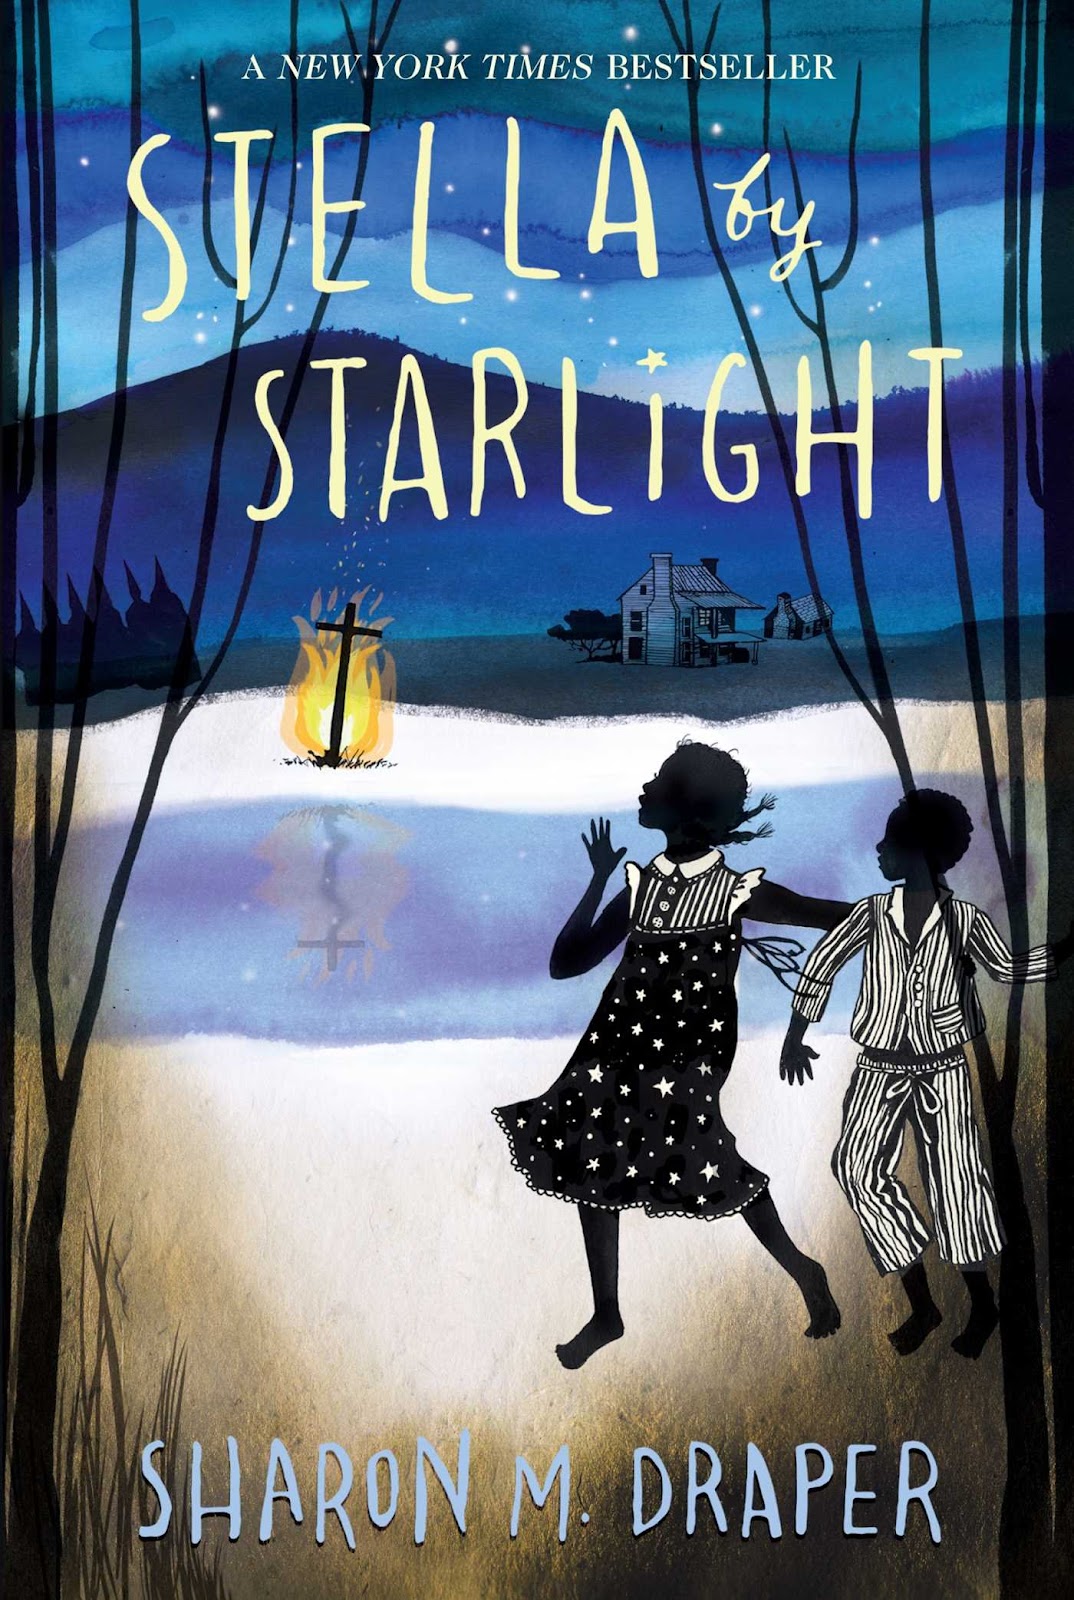 Stella by Starlight: Draper, Sharon M.: 9781442494985: Amazon.com: Books